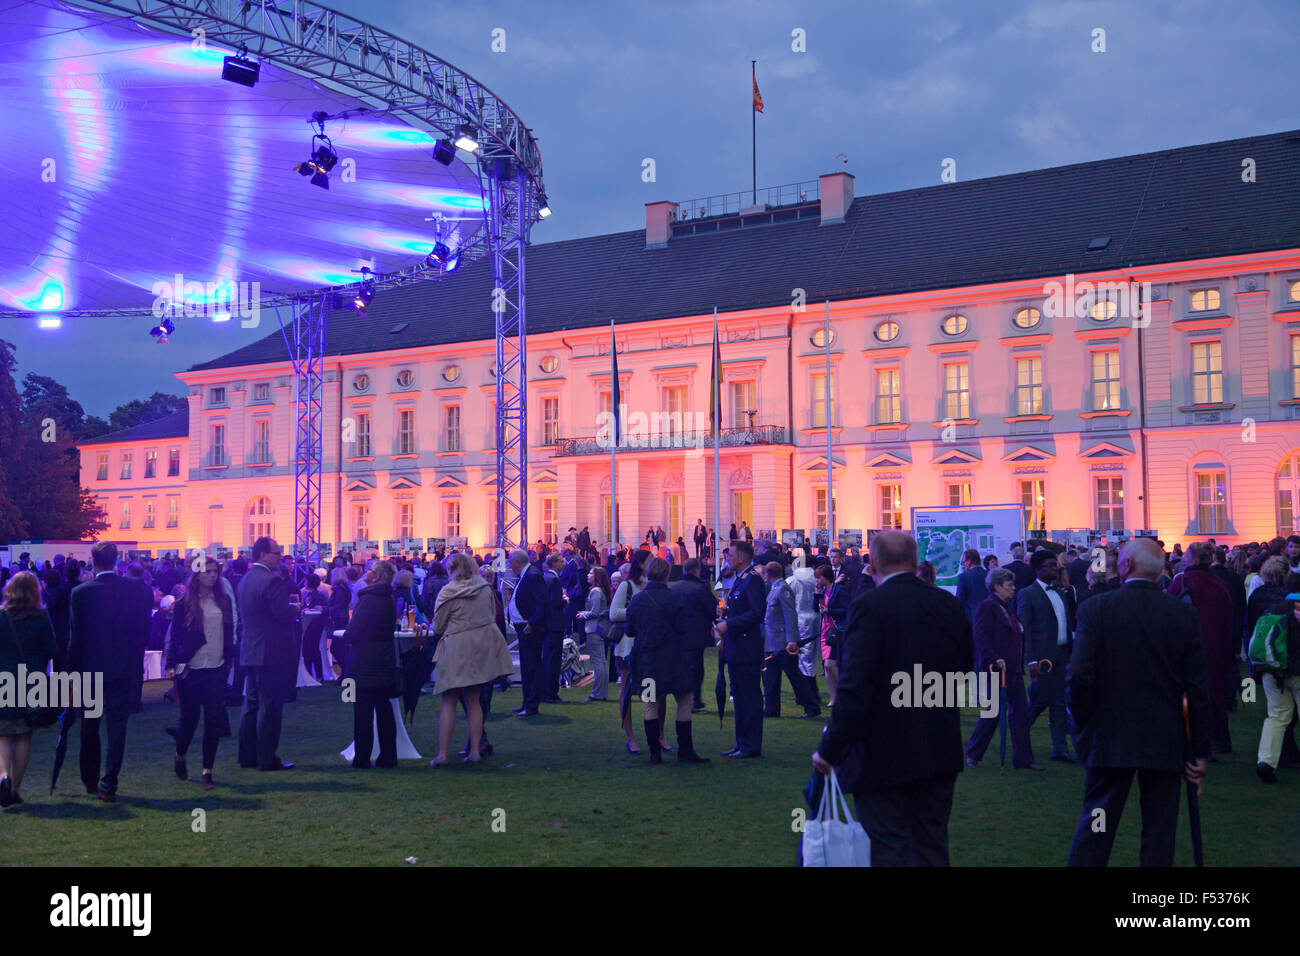 Des citoyens Fest annuel au château de Bellevue, Berlin, Allemagne Banque D'Images